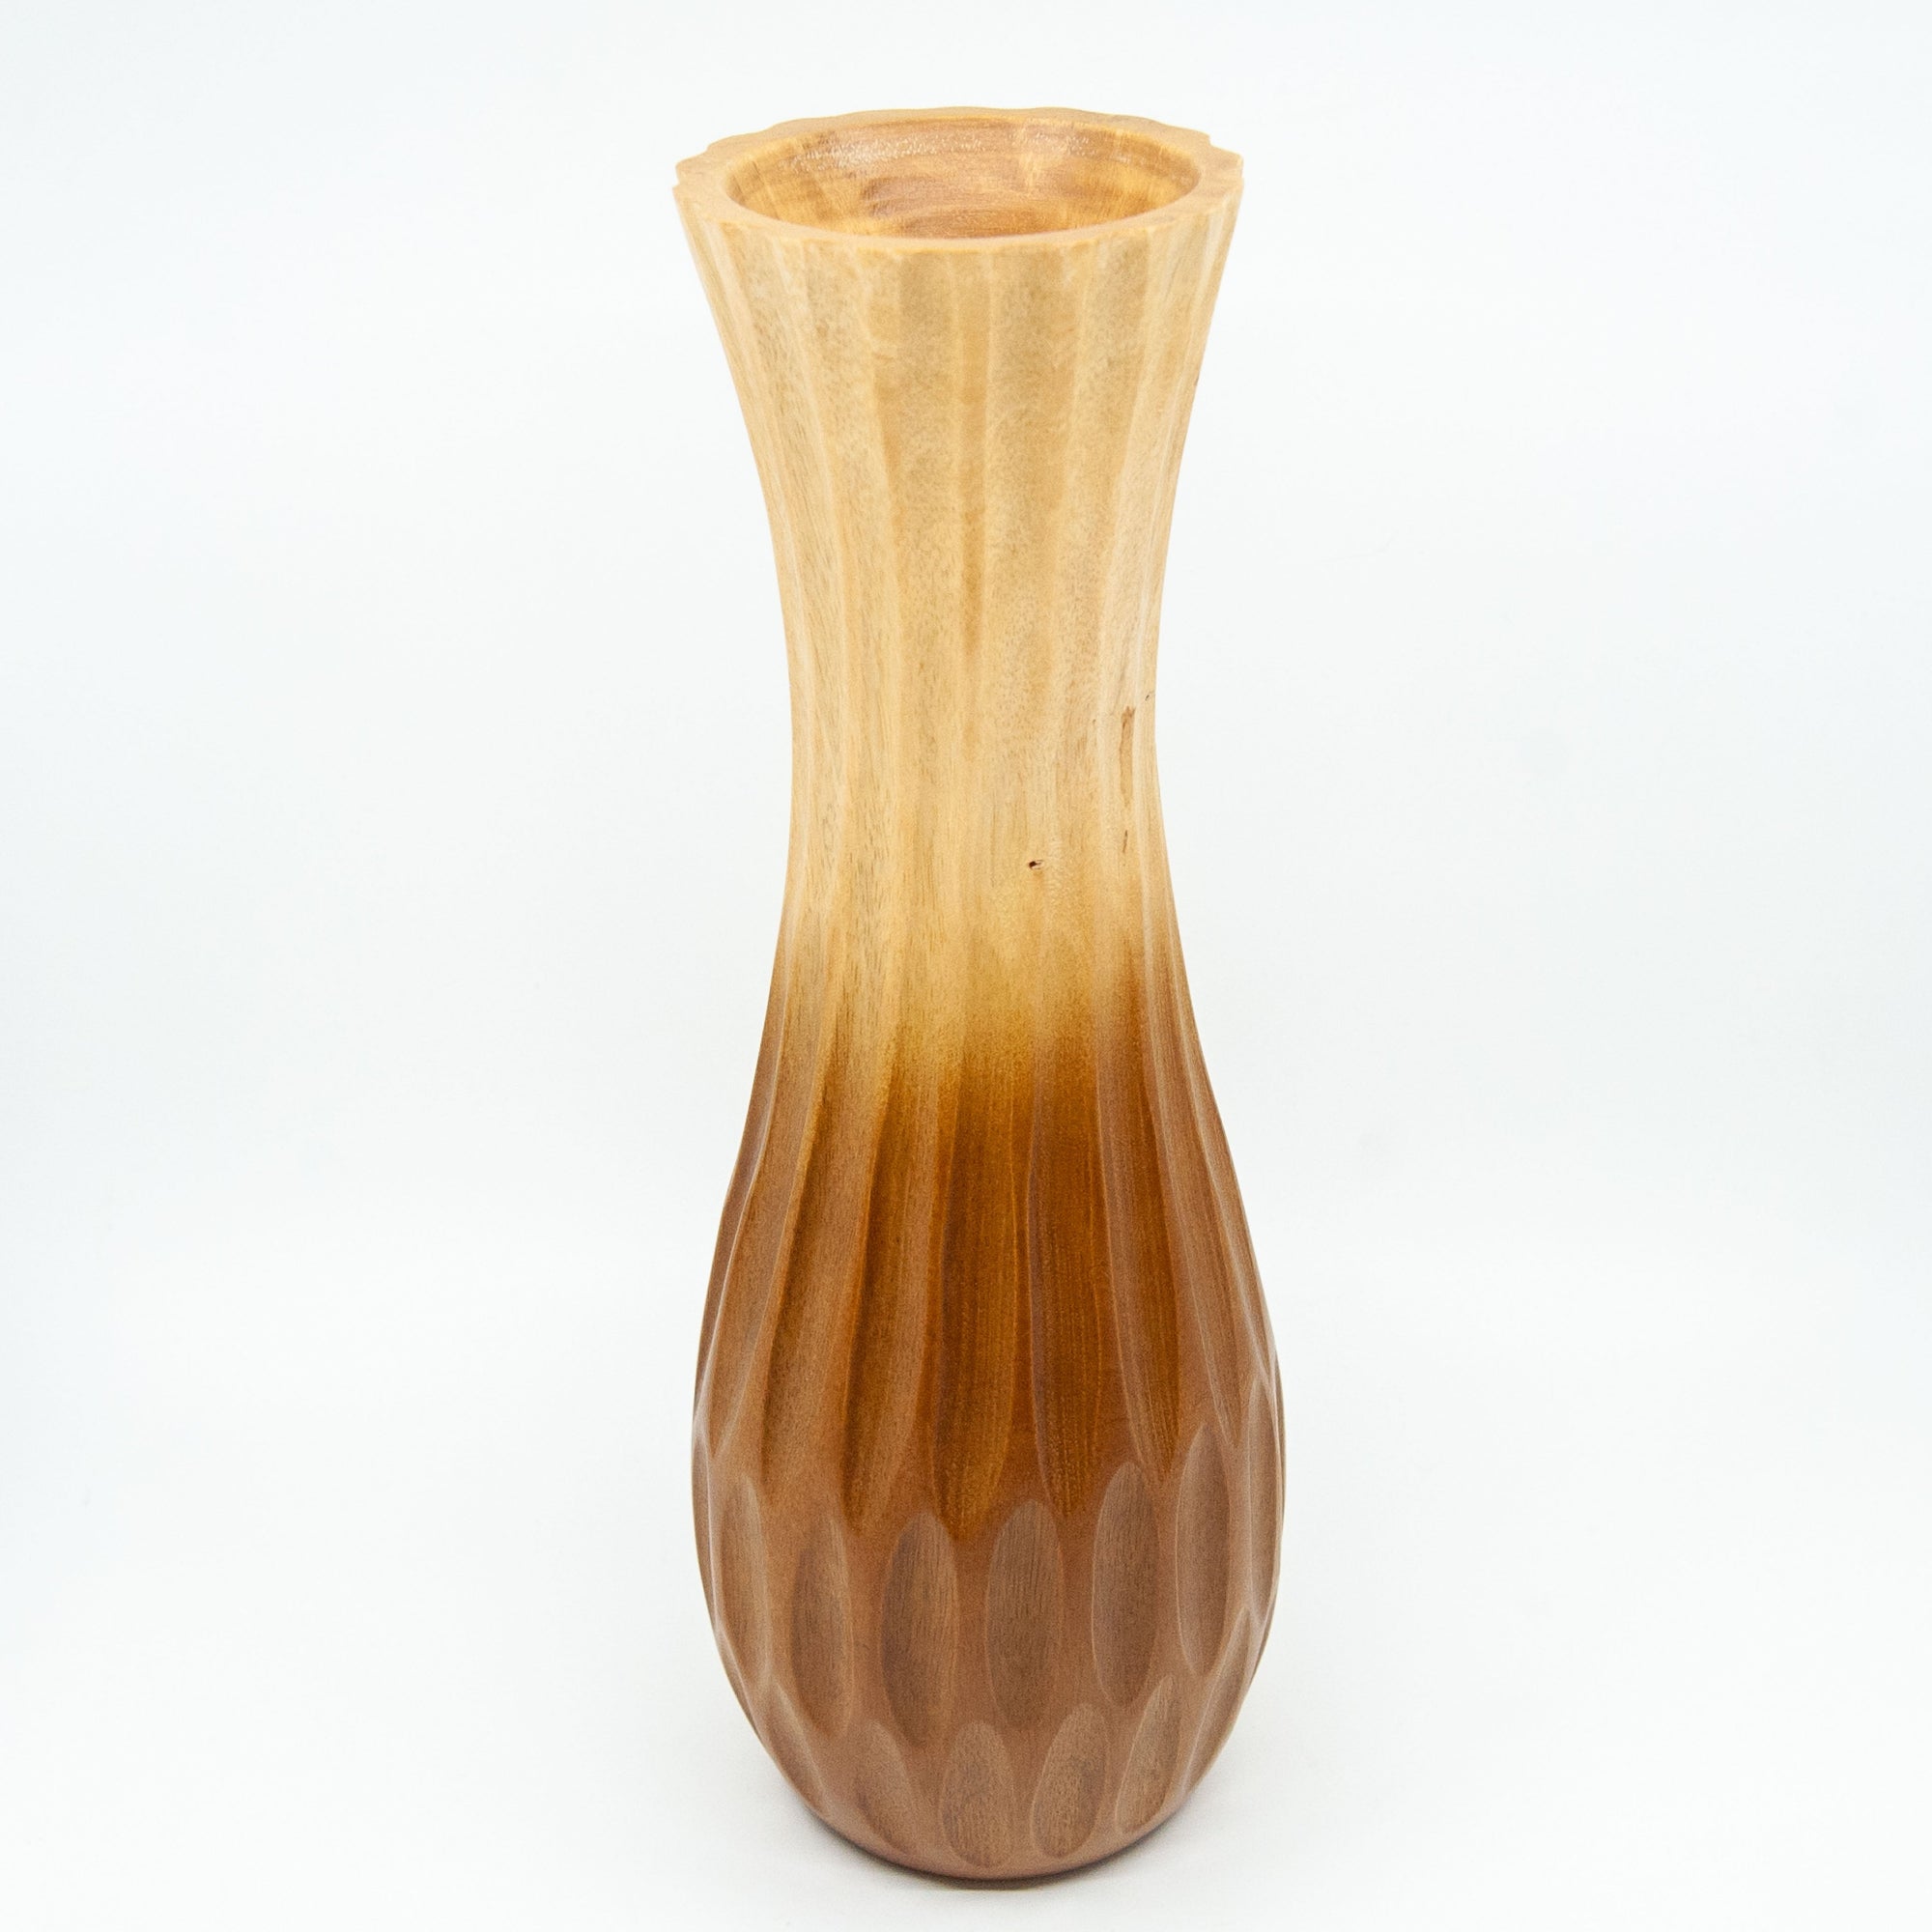 Mango Wood Natural Carved Vase - 14"